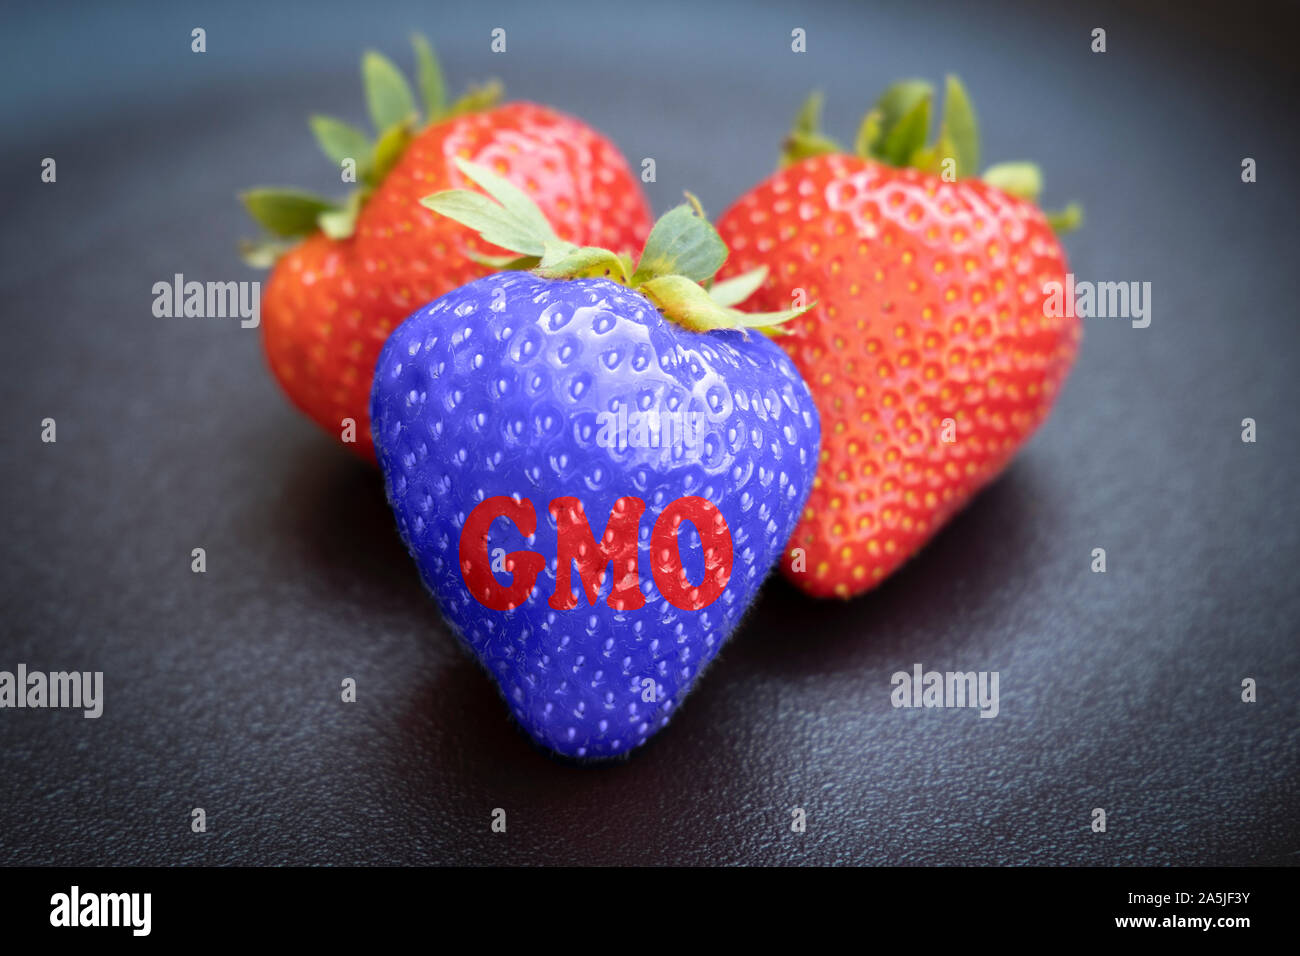 Ogm modificati geneticamente strawberrie contro organic su sfondo scuro. Foto Stock